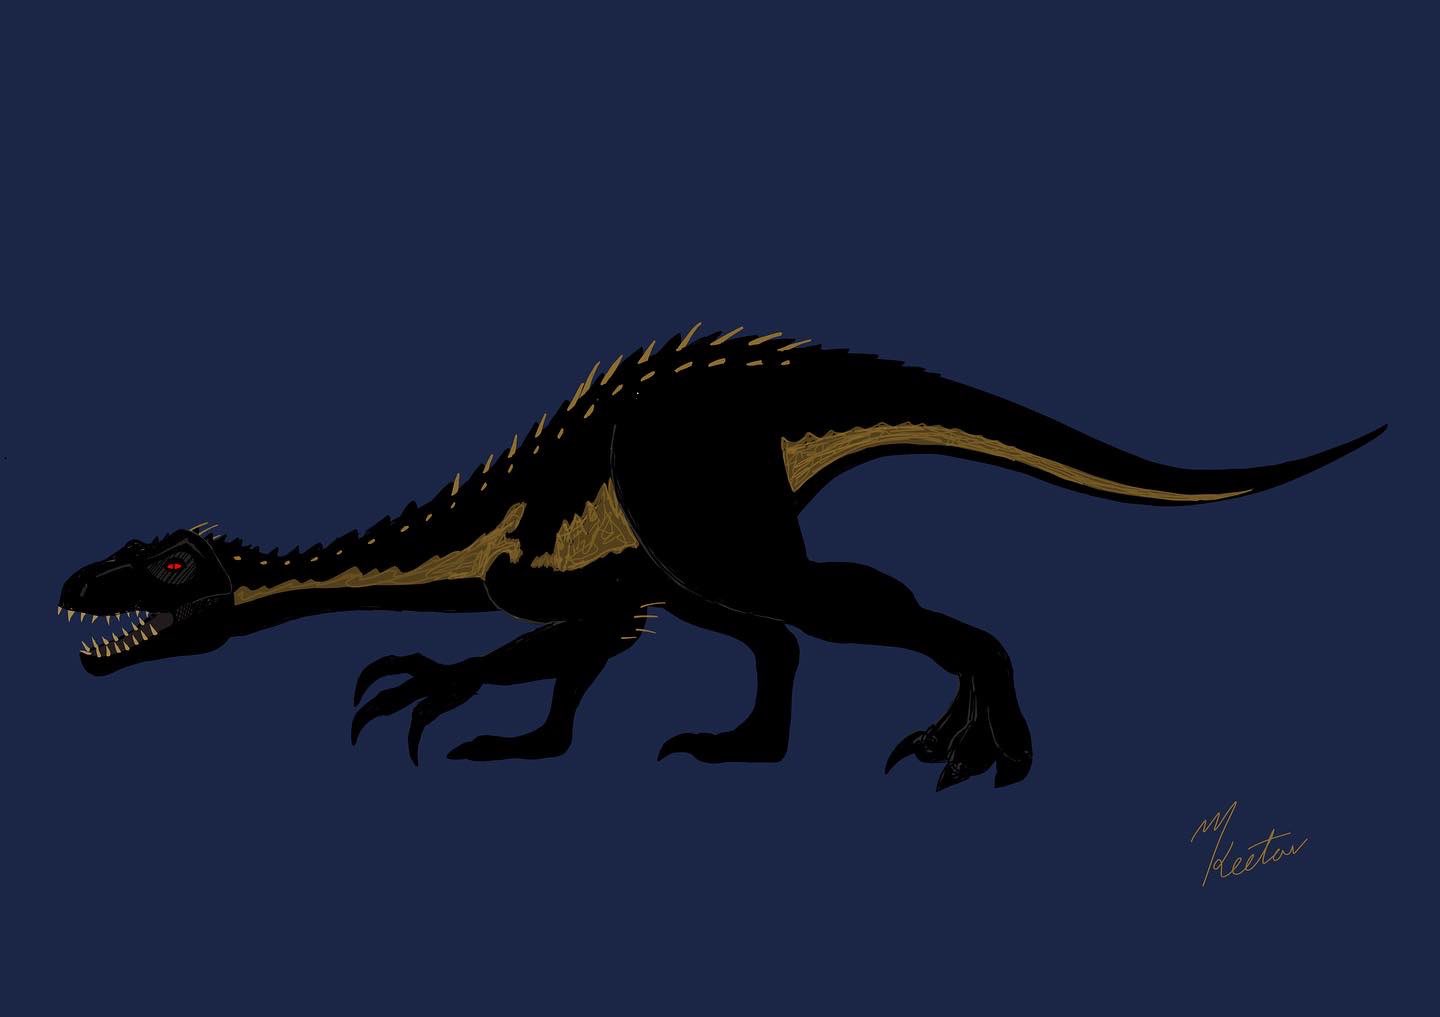 ケータ Indoraptor インドラプトル インドラプター そいうや描いたことなかった インドラプトル 人の手によって生み出され 悲しい結末を迎える恐竜なので 落ち着いたタッチで描いてみました 恐竜 Dinosaur Jurassicpark